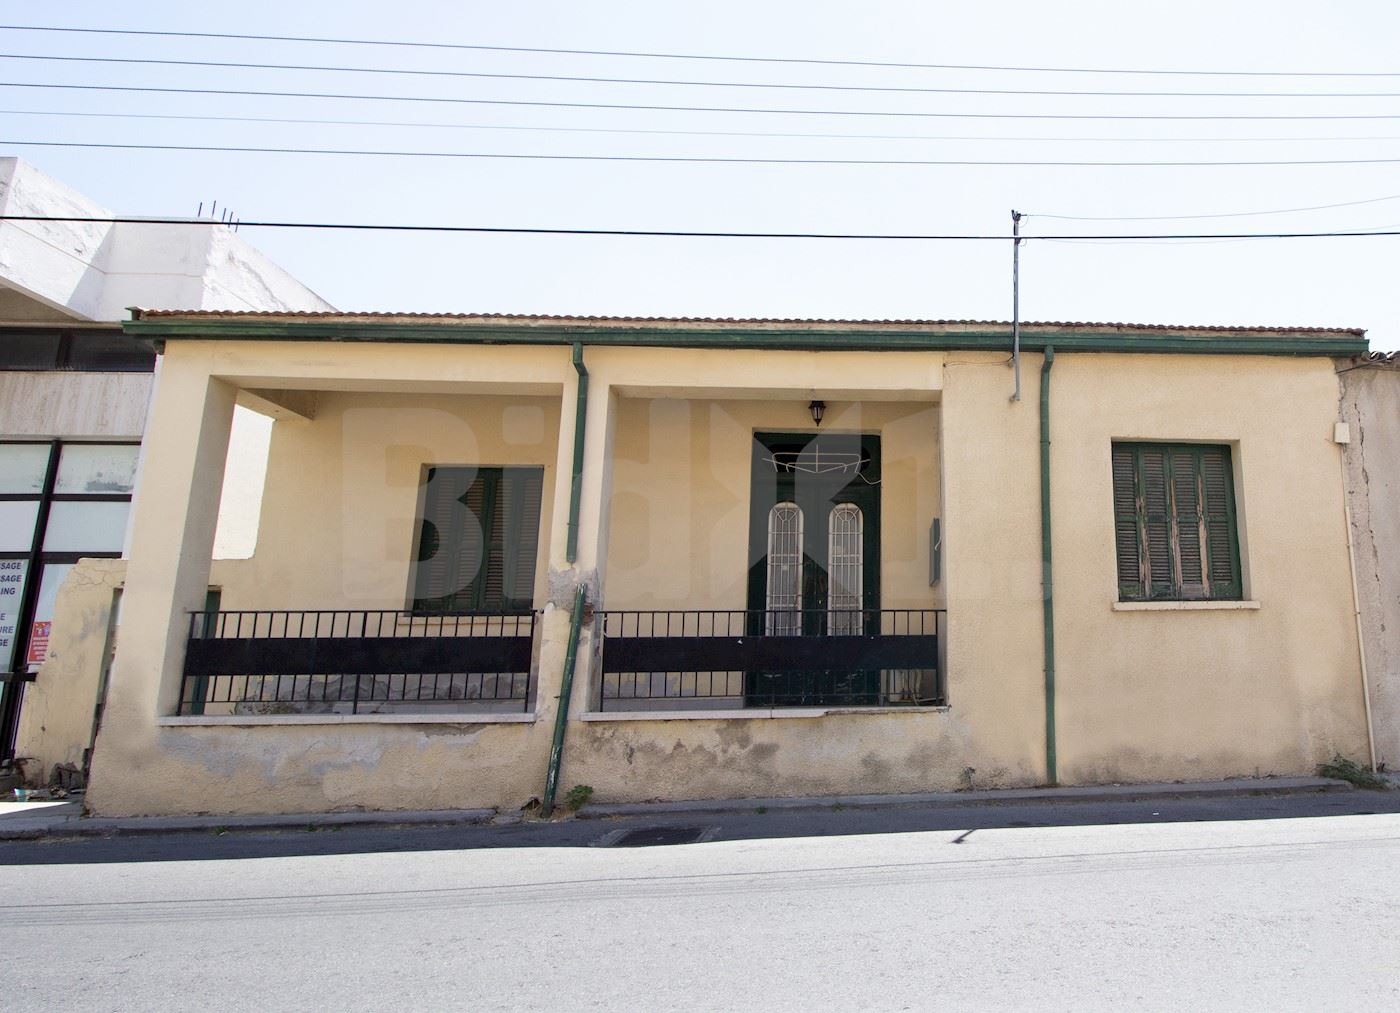 House in Strovolos (Chryseleousa Parish), Nicosia 1/13